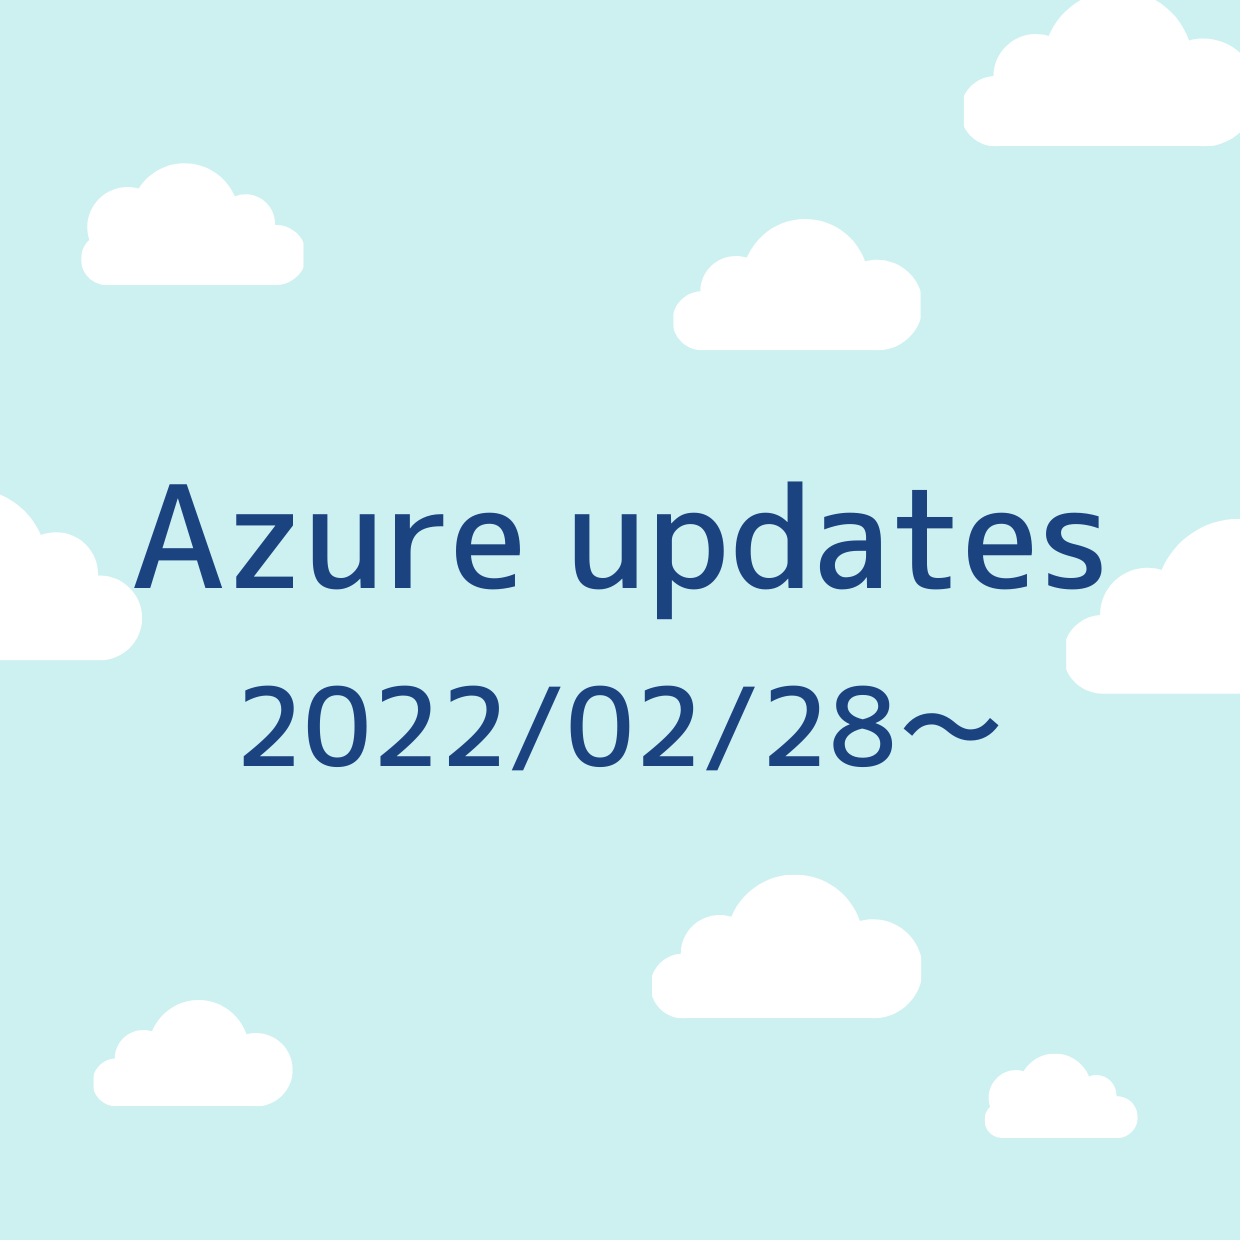 2022/02/28 週の Azure updates 日本語速報